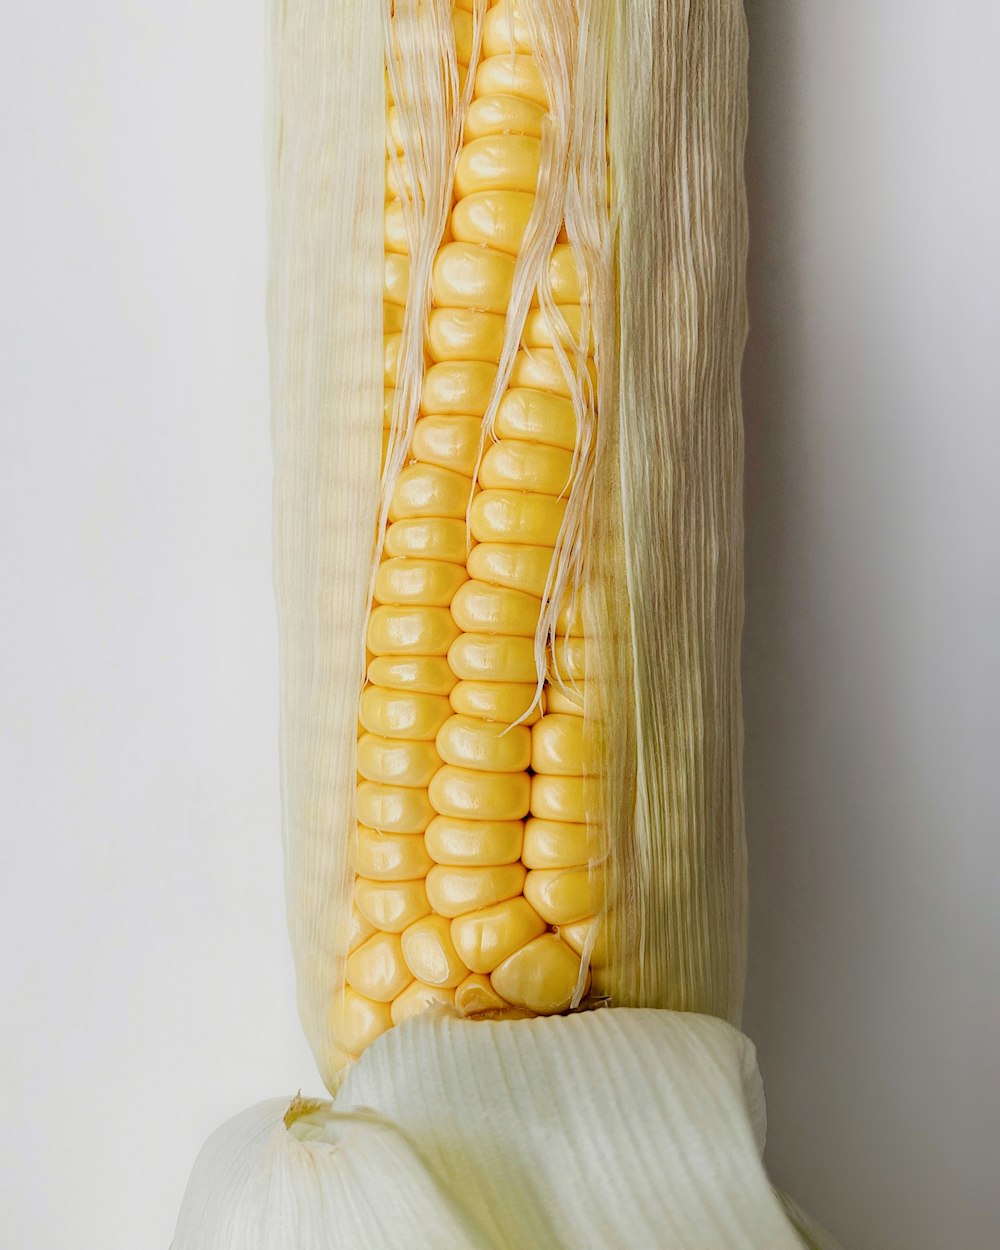 maíz en plato de cerámica blanca